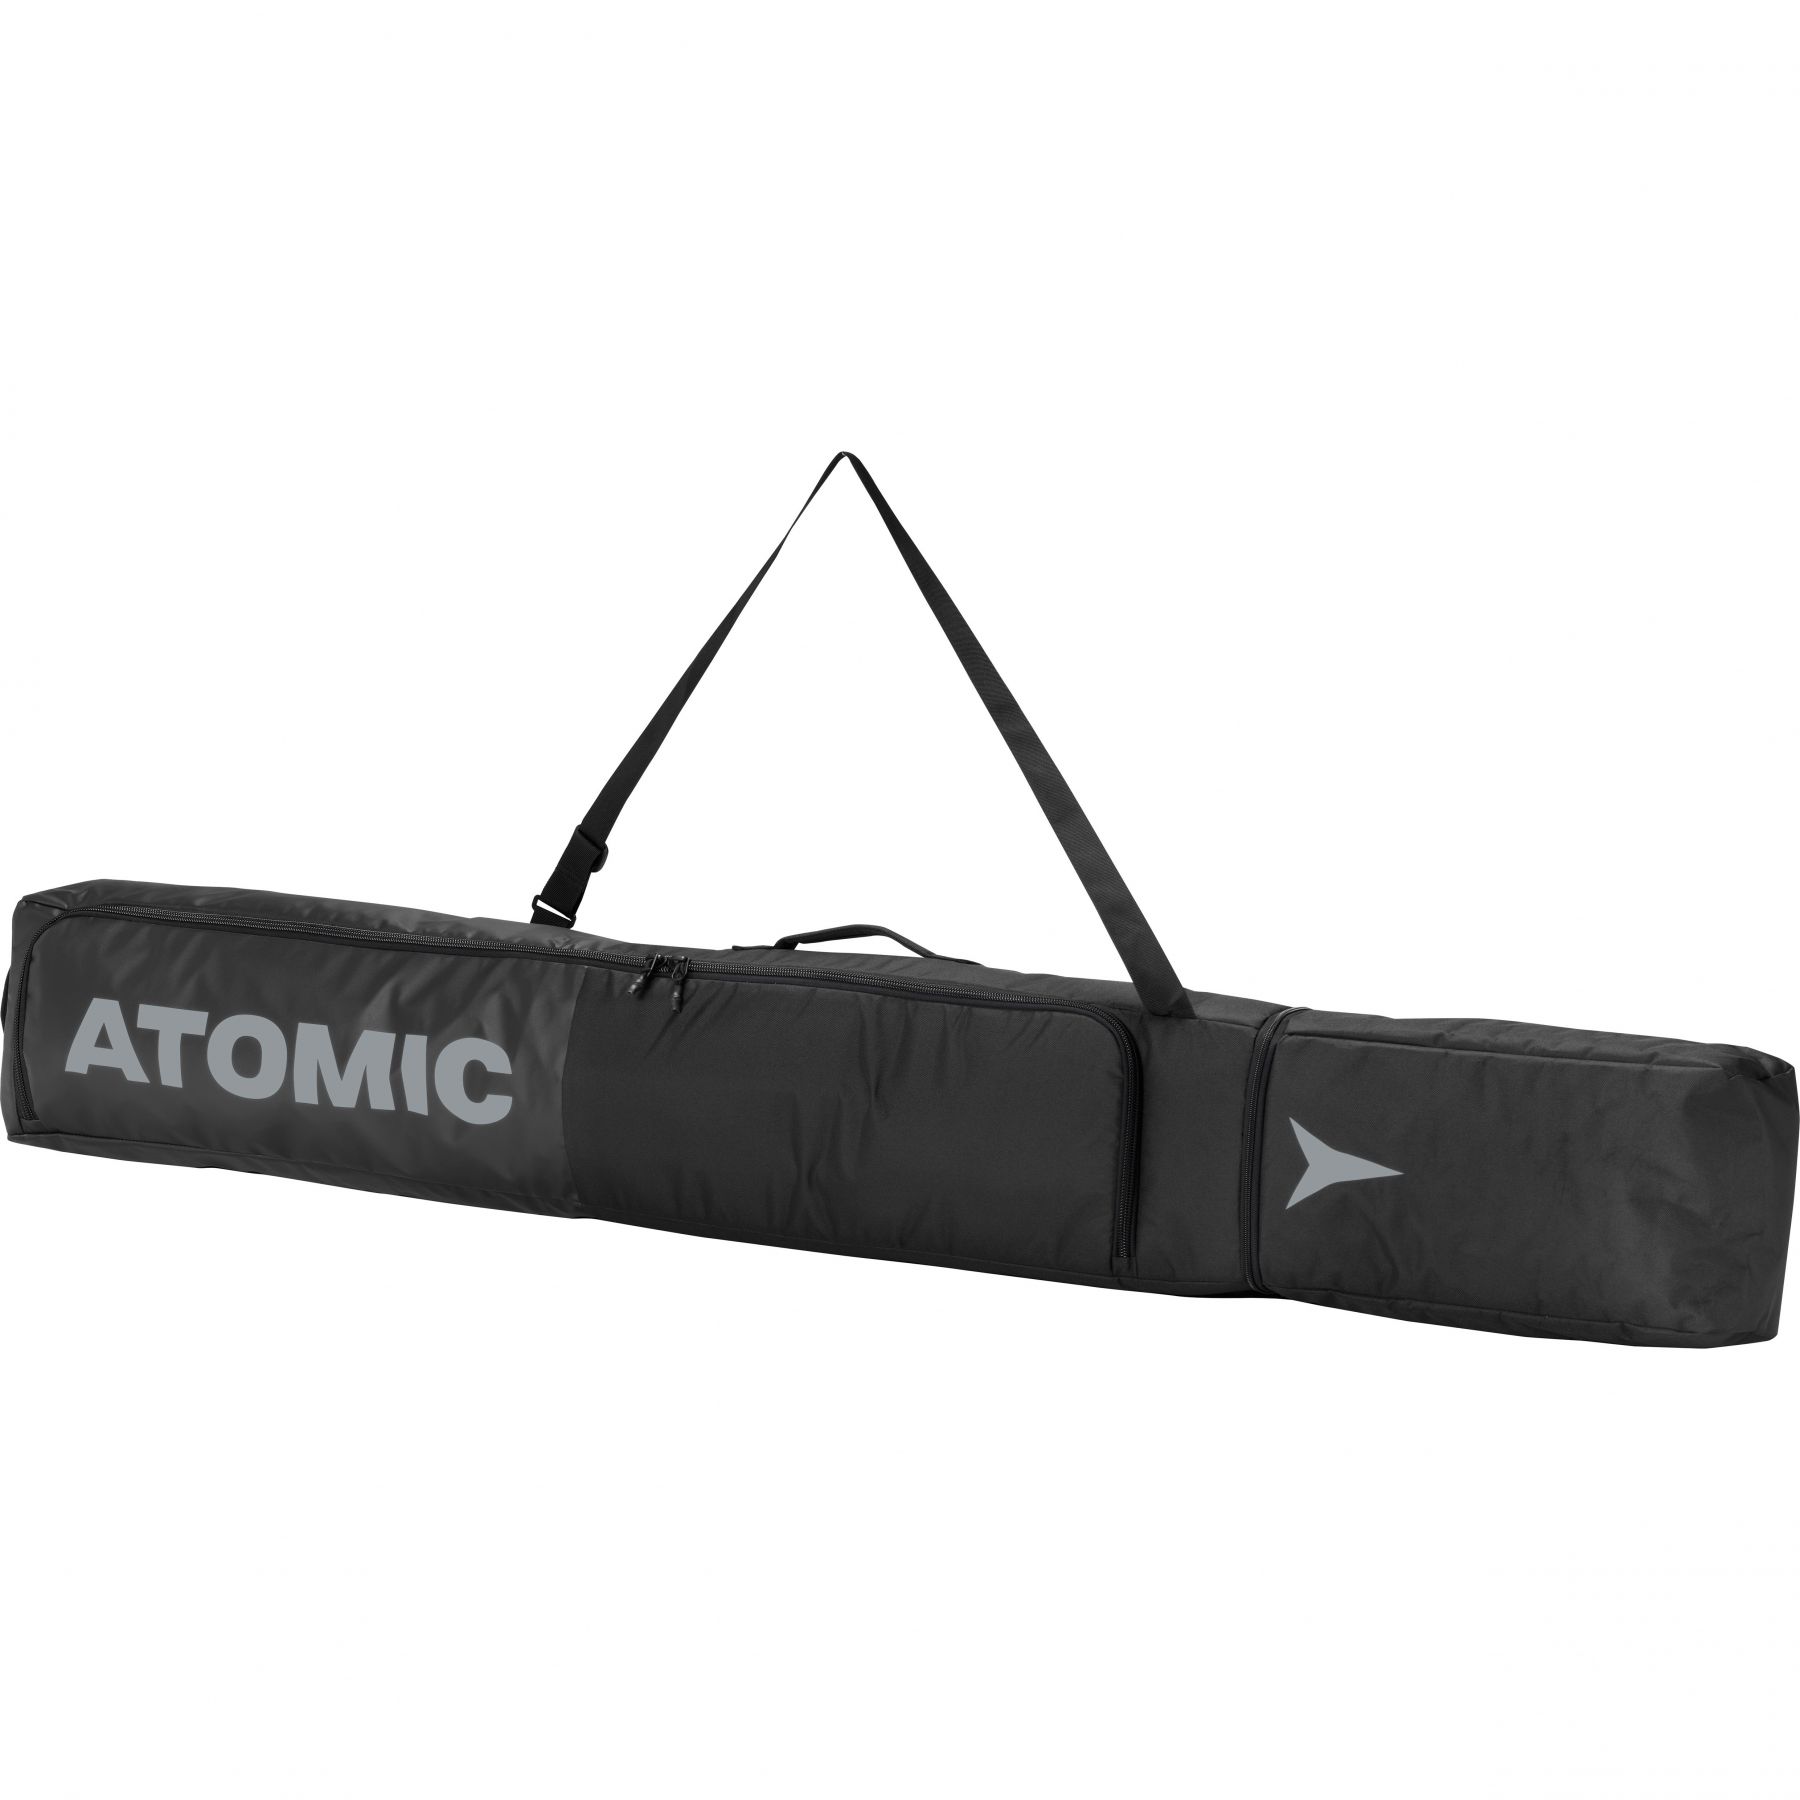 Atomic Ski Bag musta